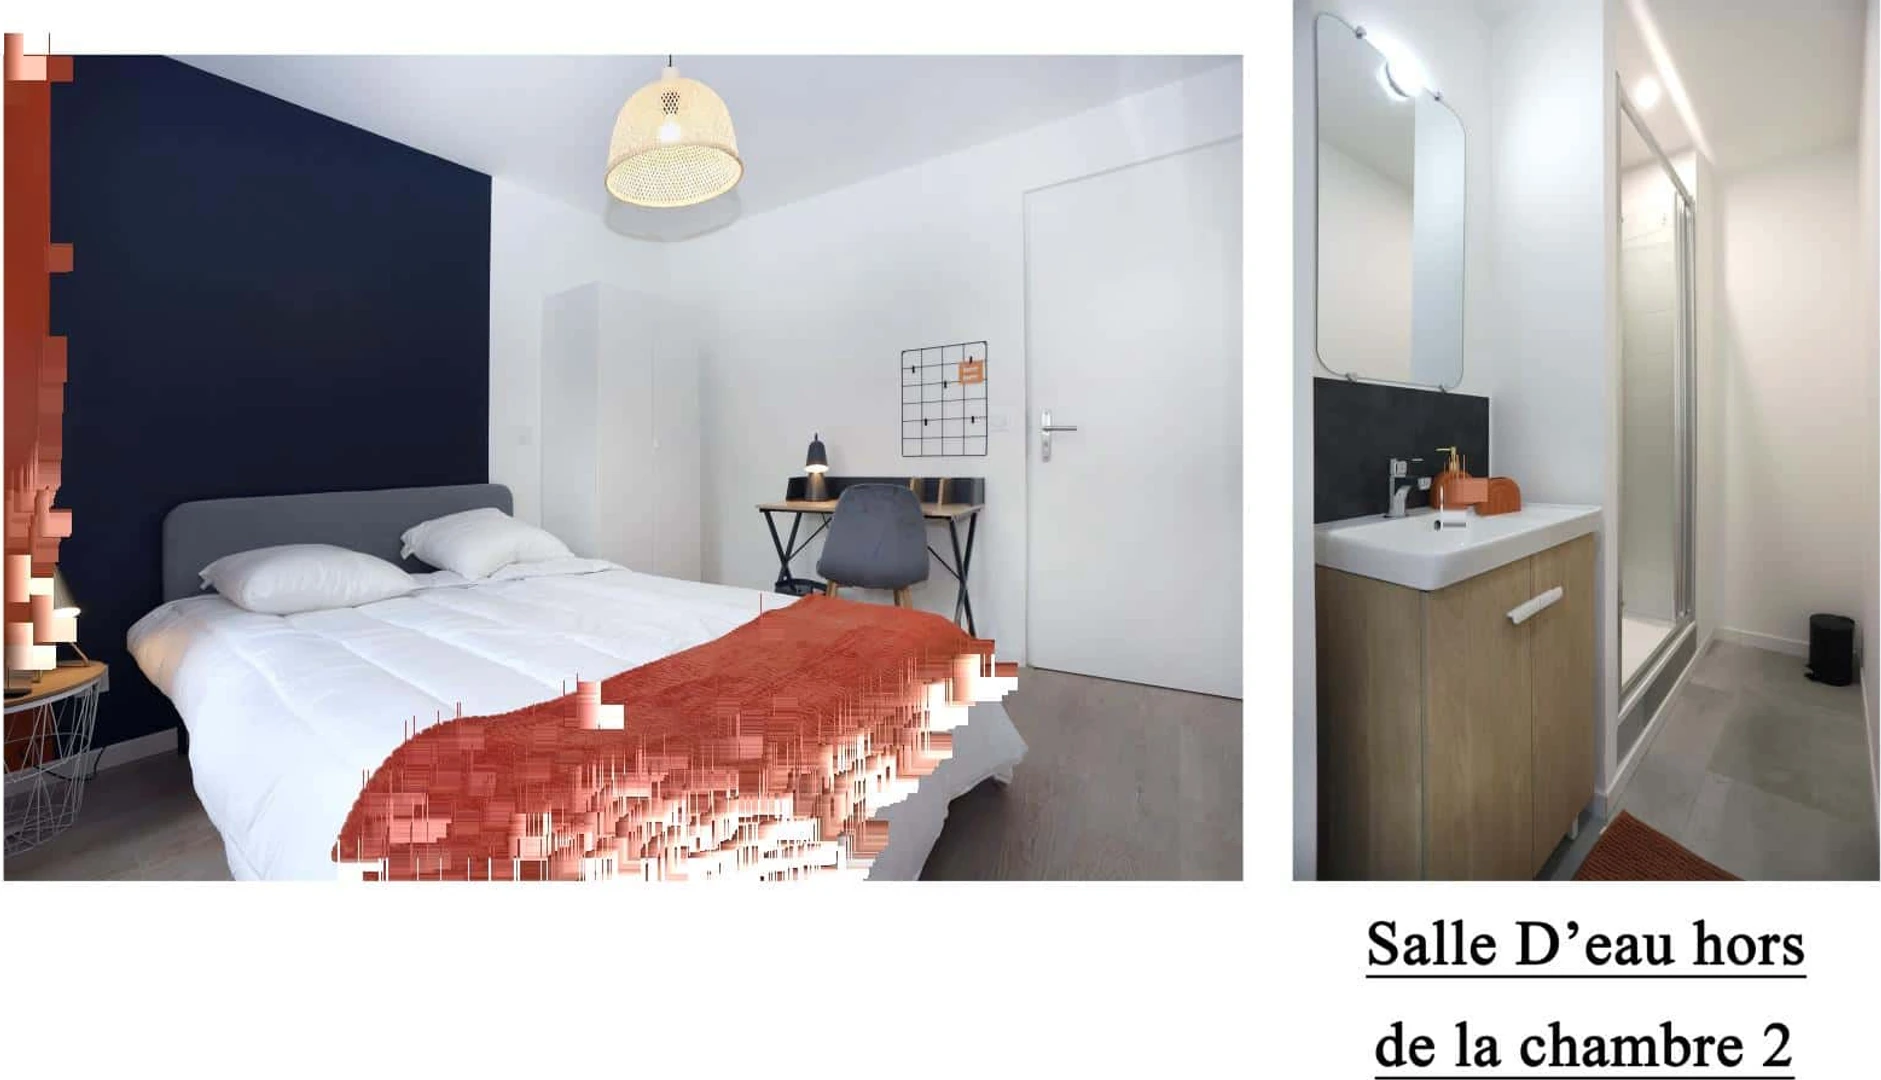 Angers de çift kişilik yataklı kiralık oda